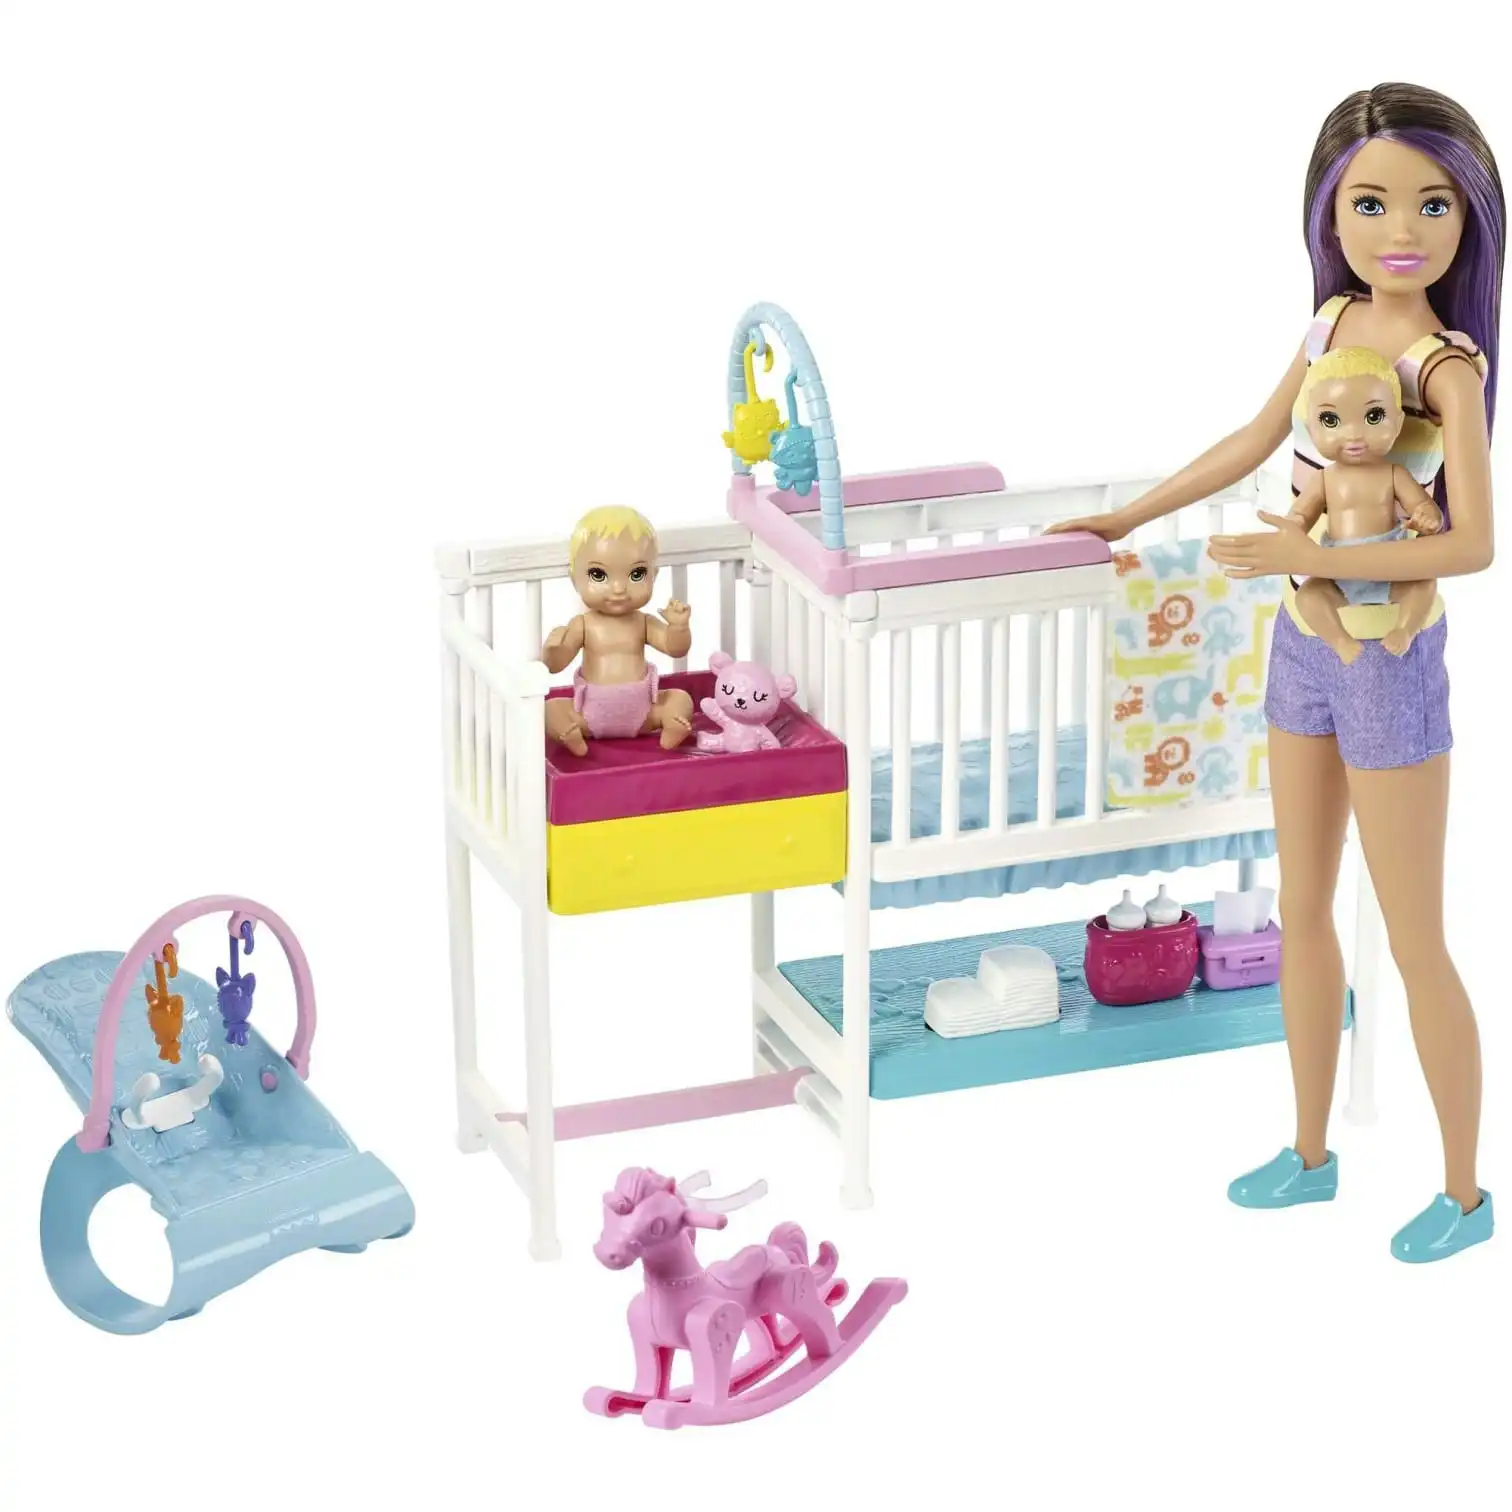 Barbie Skipper Babysitters Inc Nap N Nurture Nursery Dolls And Playset  Mattel